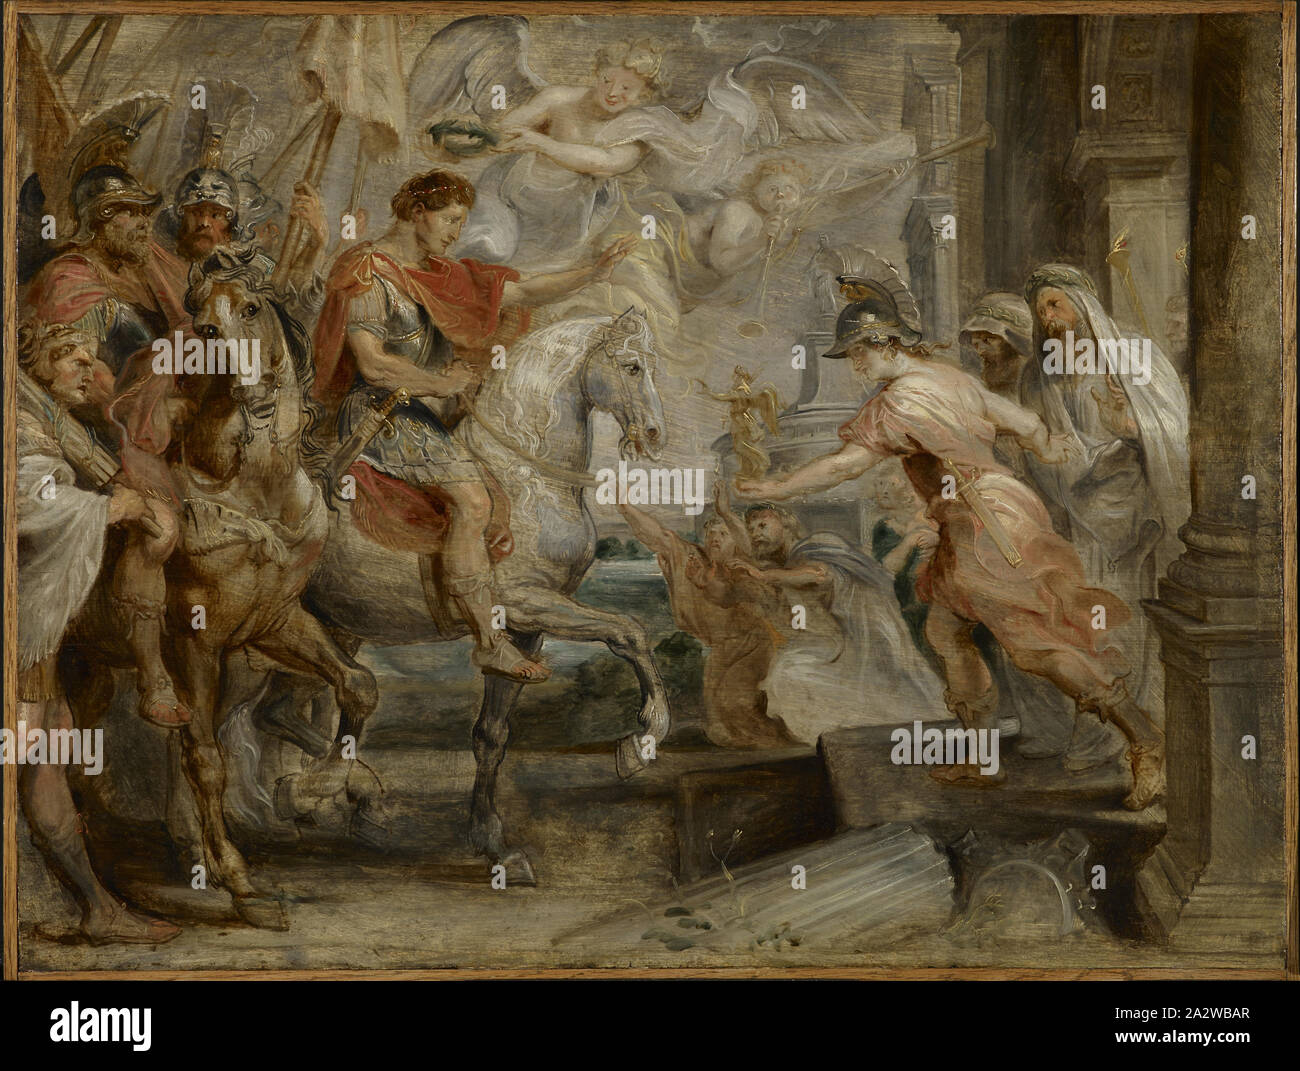 Entrata trionfale di Costantino a Roma, Peter Paul Rubens (fiammingo, 1577-1640), circa 1621, olio su pannello, 19 x 25-1/2 in. (Pannello) circa 28-1/2 x 34 x 3-1/4 in. (Incorniciato), unione di pittura e scultura prima del 1800 Foto Stock